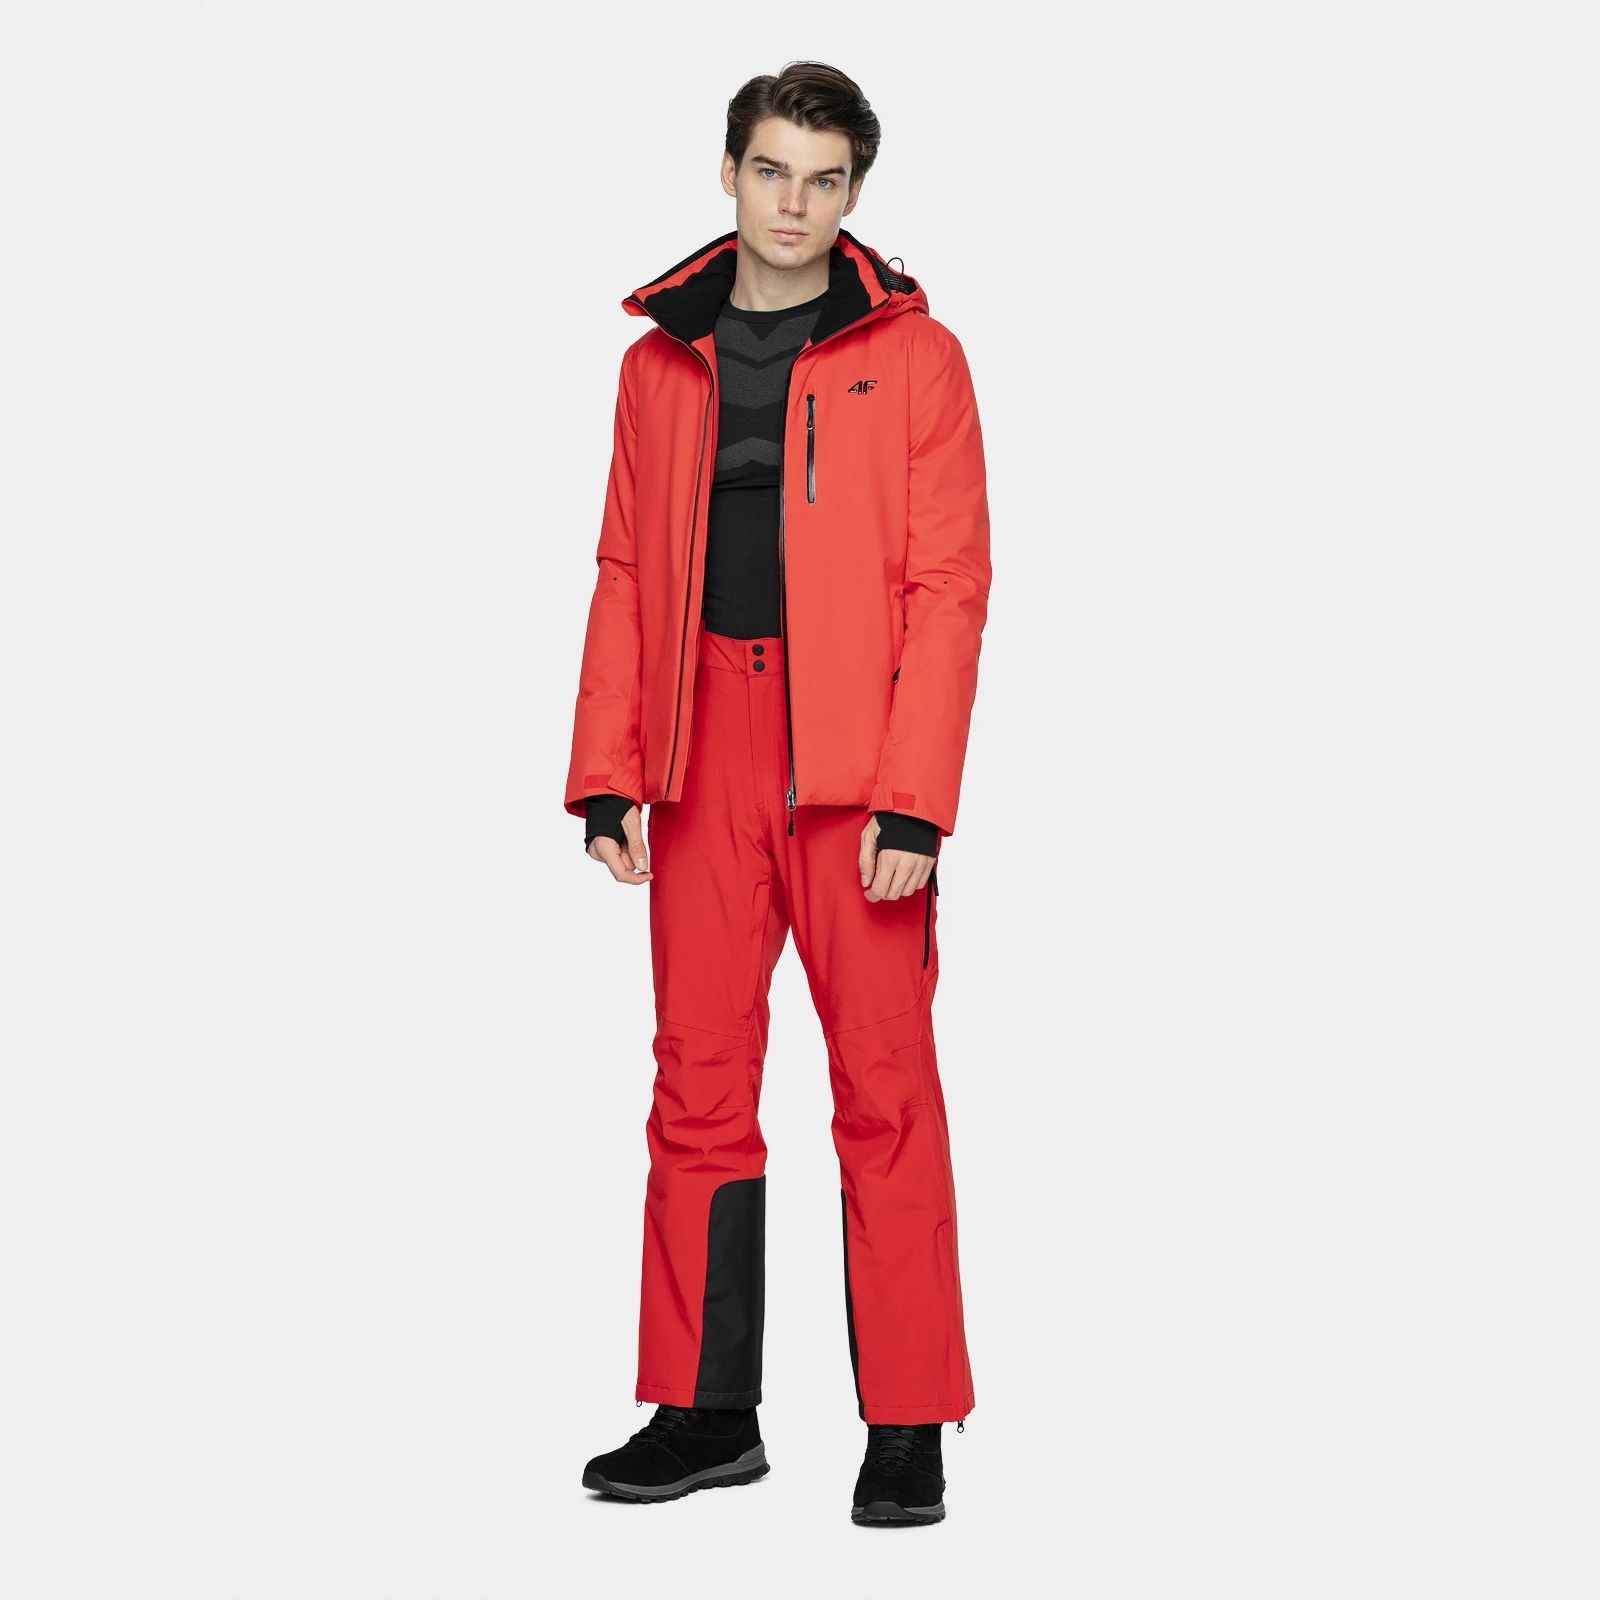 Geci Ski & Snow -  4f Men ski jacket KUMN009